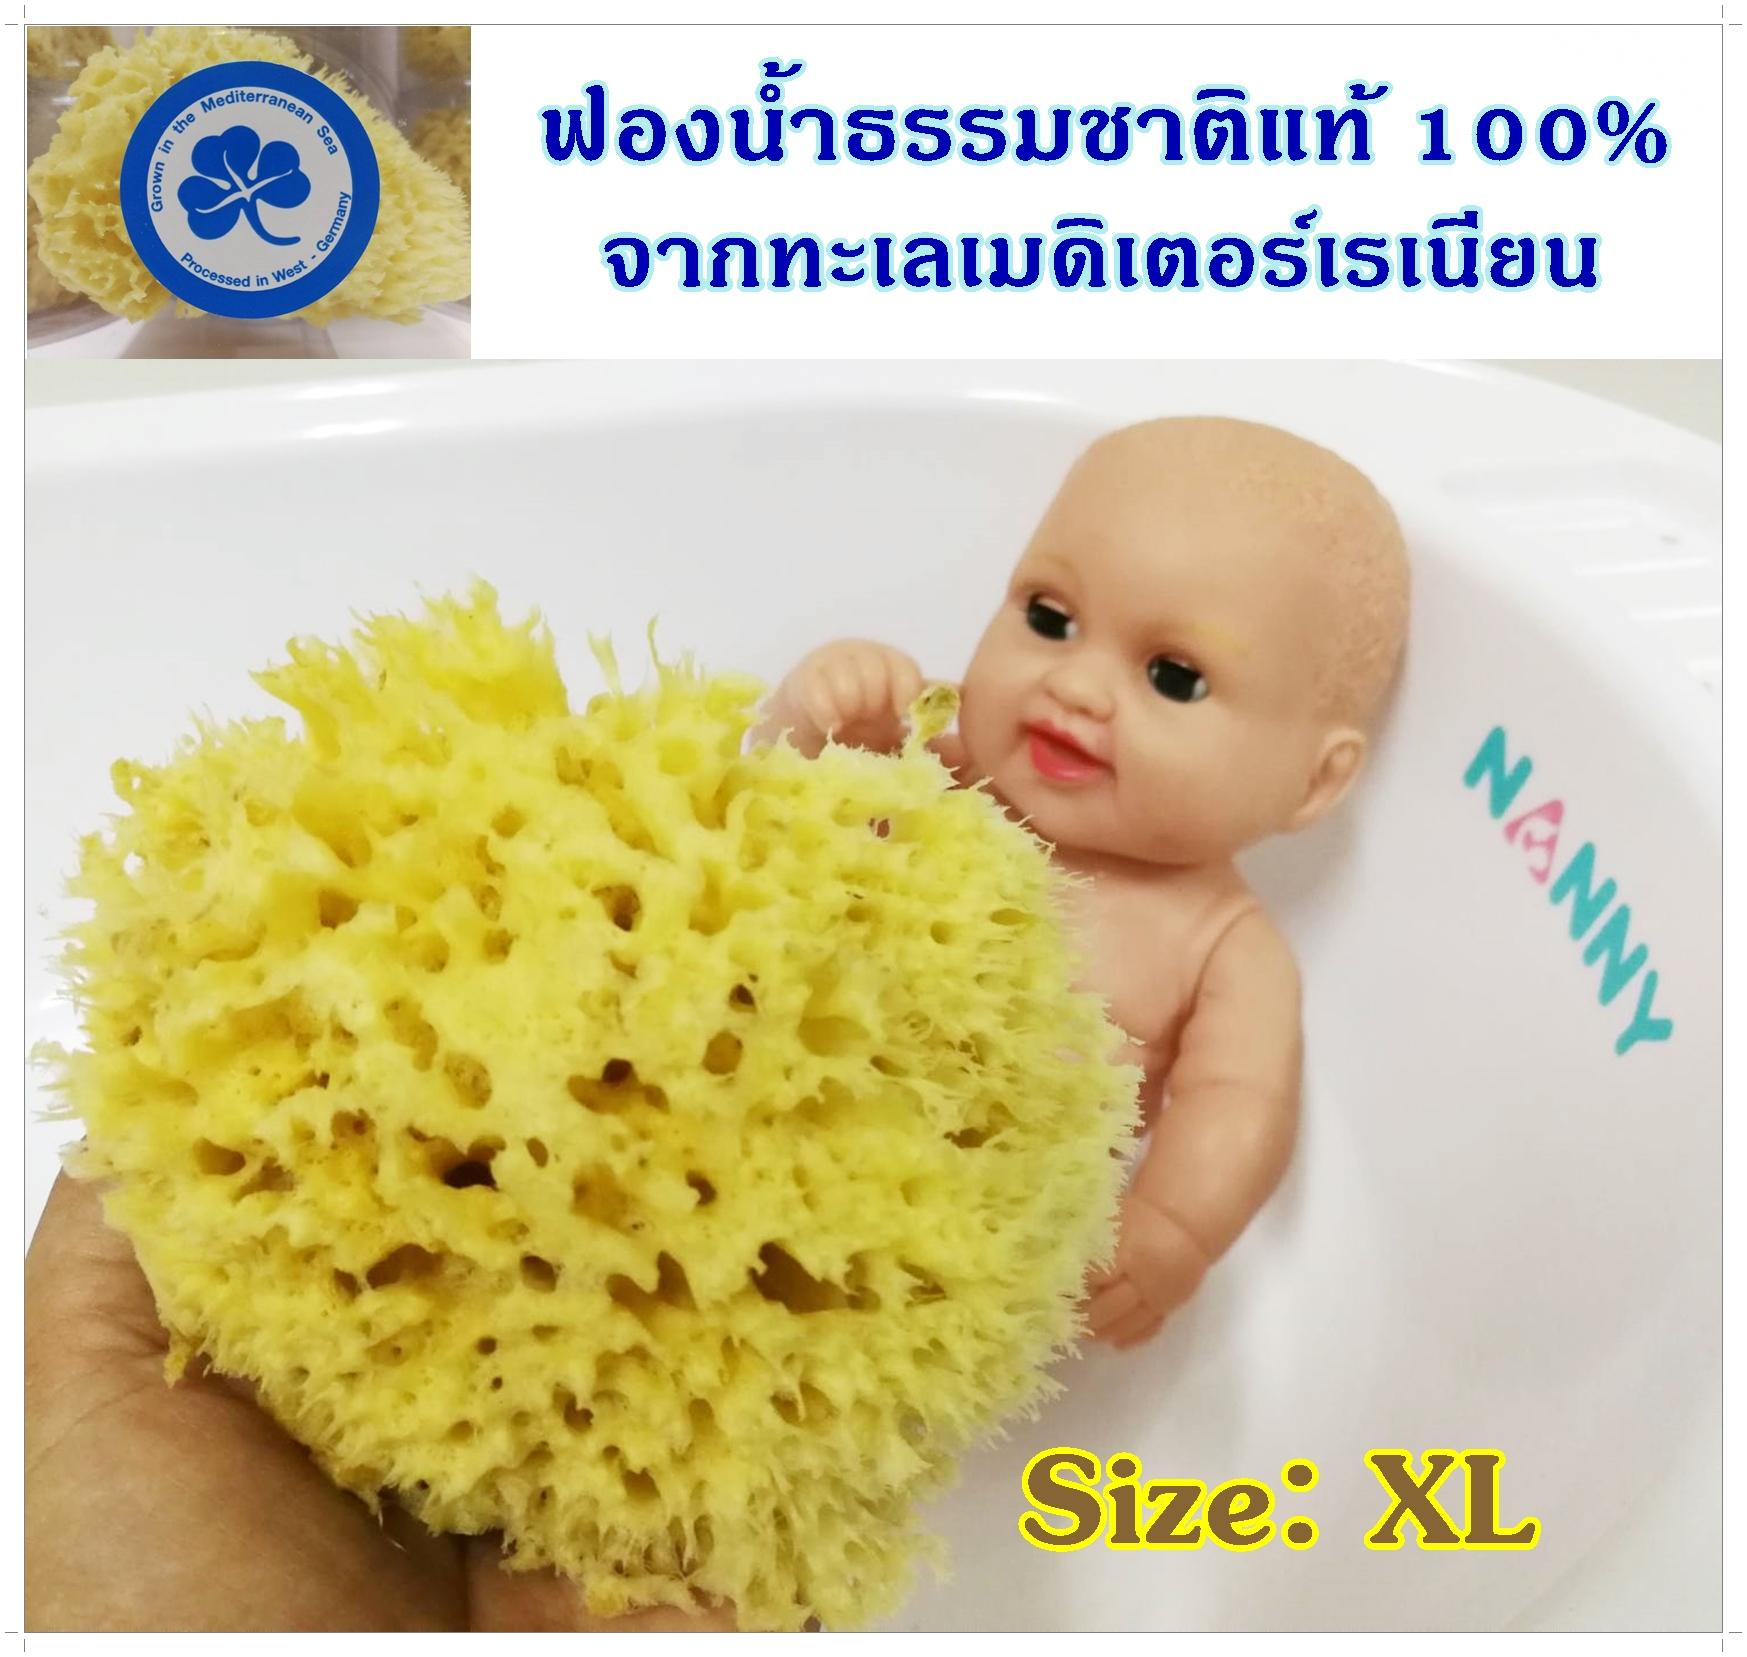 ฟองน้ำธรรมชาติแท้ 100% Size:XL จากทะเลเมดิเตอร์เรเนียนใช้สำหรับอาบน้ำ-สระผม ทารกตั้งแต่แรกเกิด